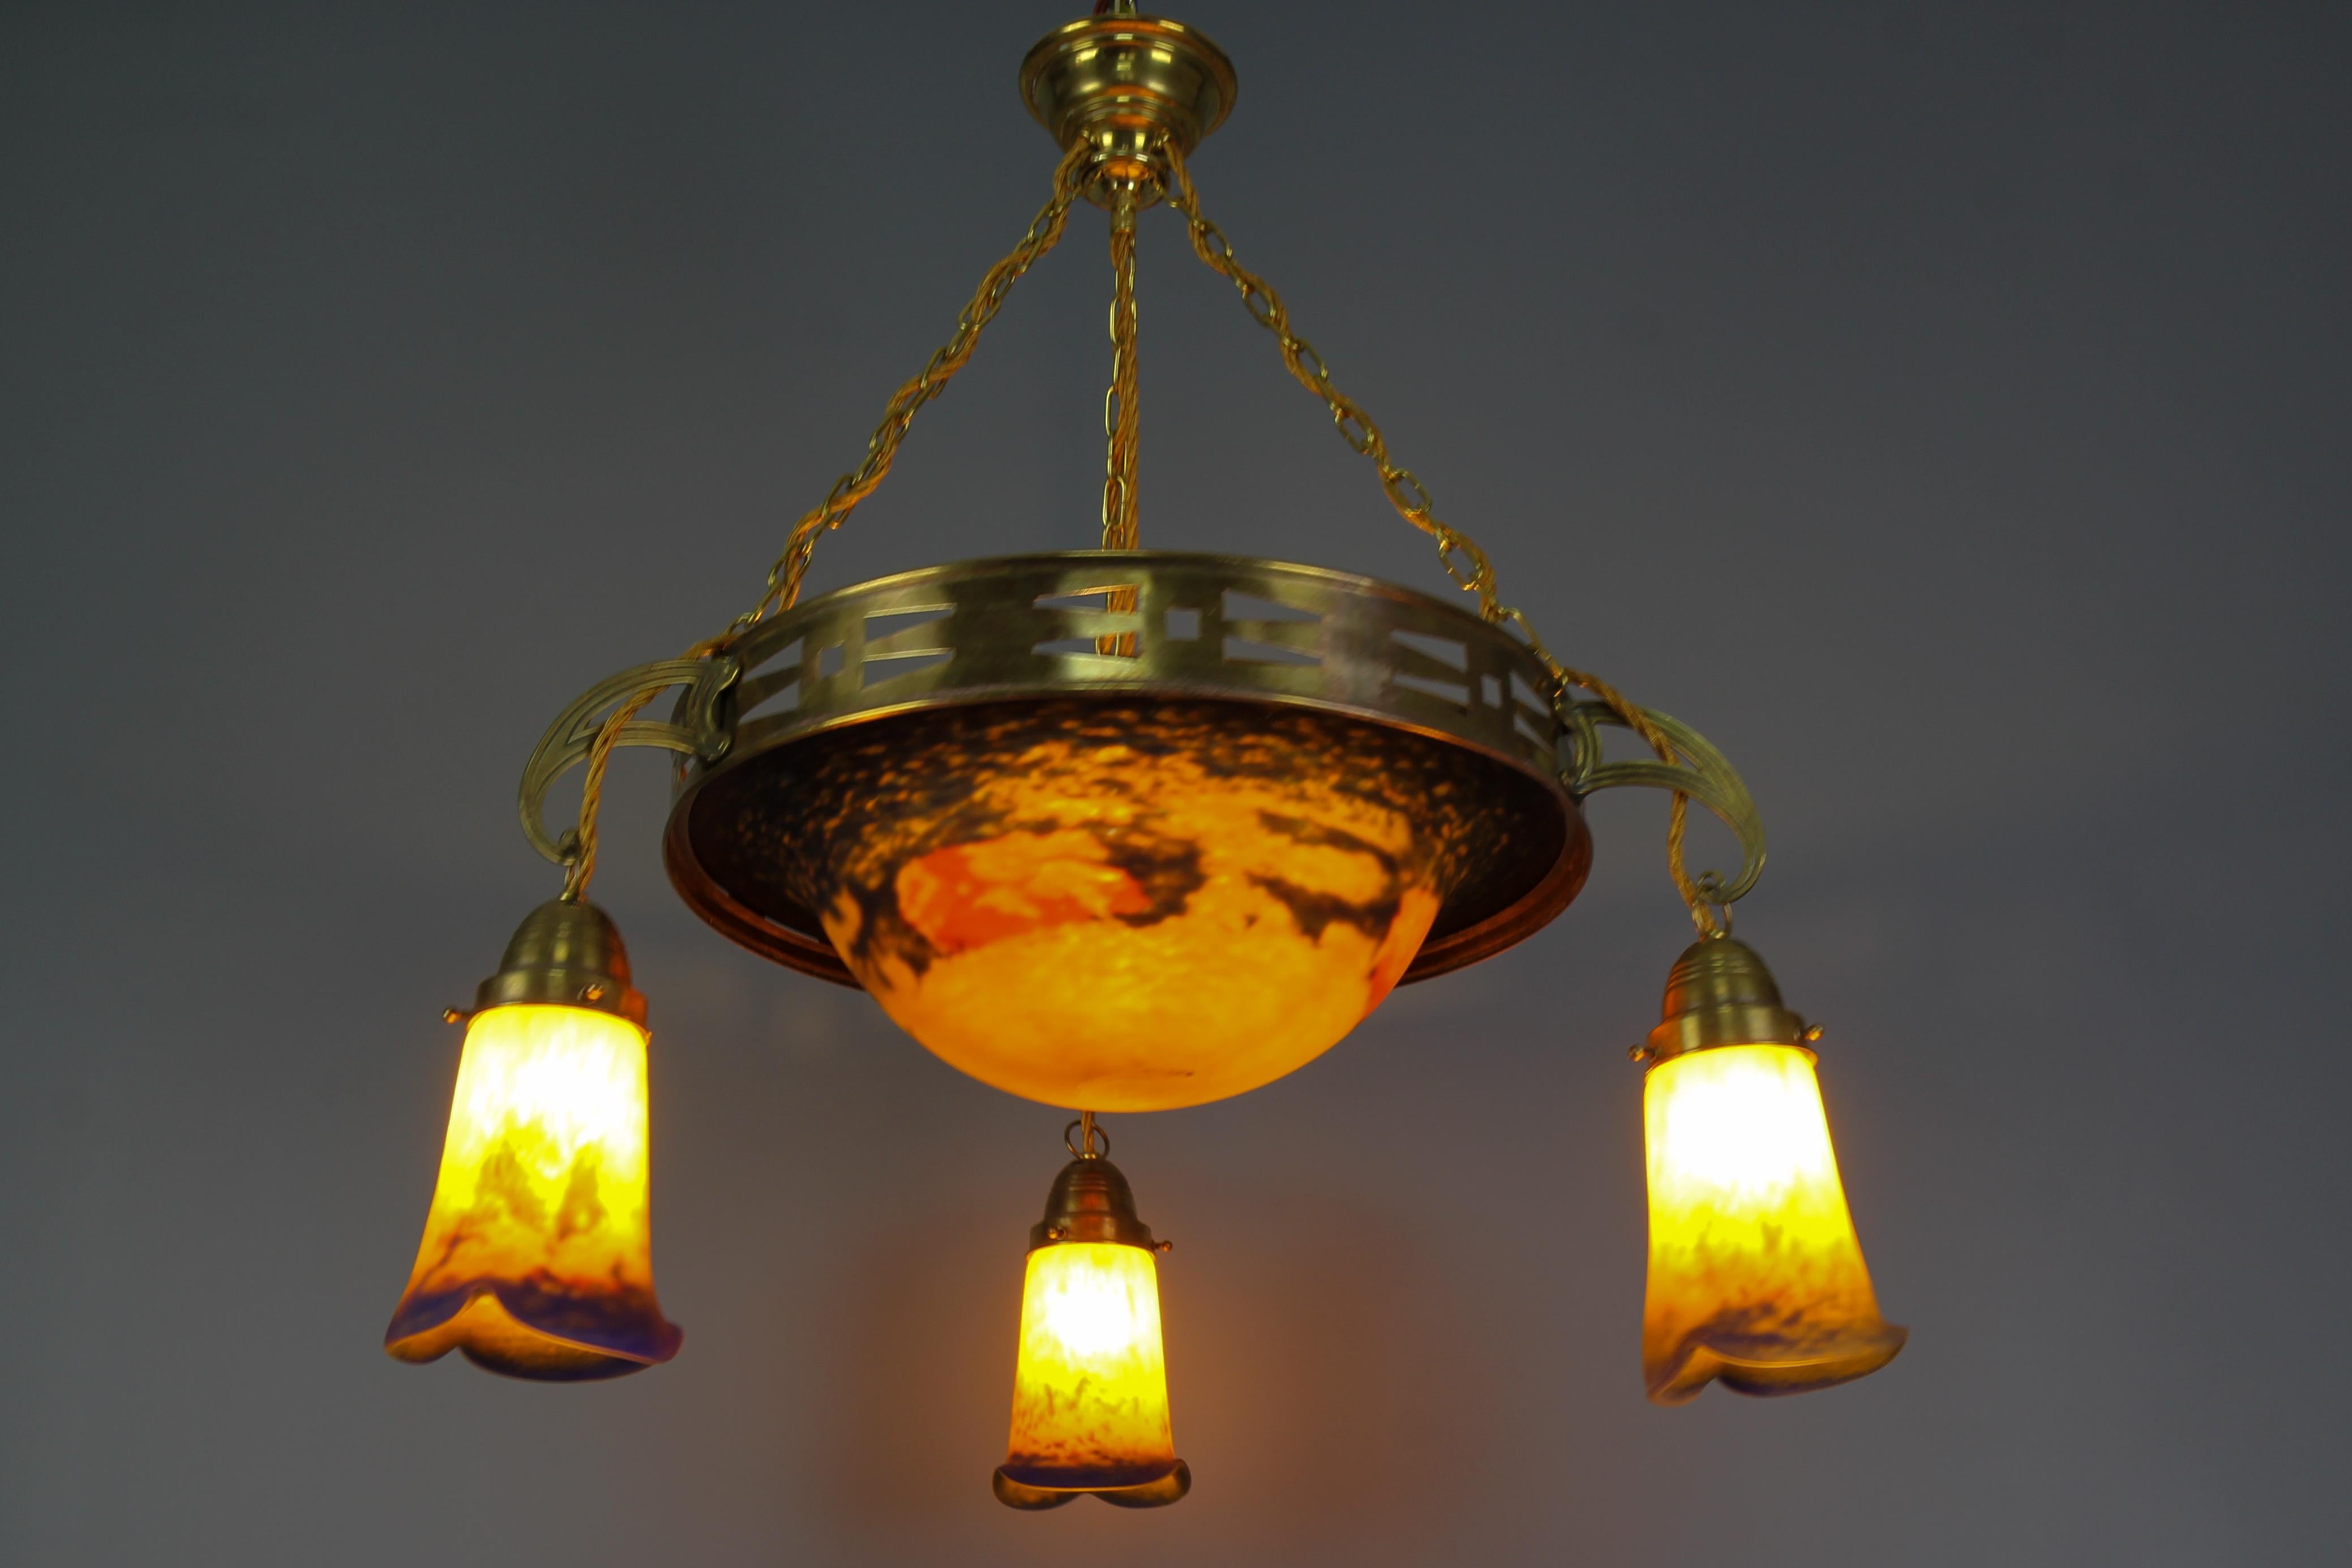 Magnifique lustre à quatre lumières en laiton Art Nouveau avec verre en Pâte de Verre par Noverdy.
Cet impressionnant lustre d'époque Art nouveau français se compose d'une coupe centrale en verre 